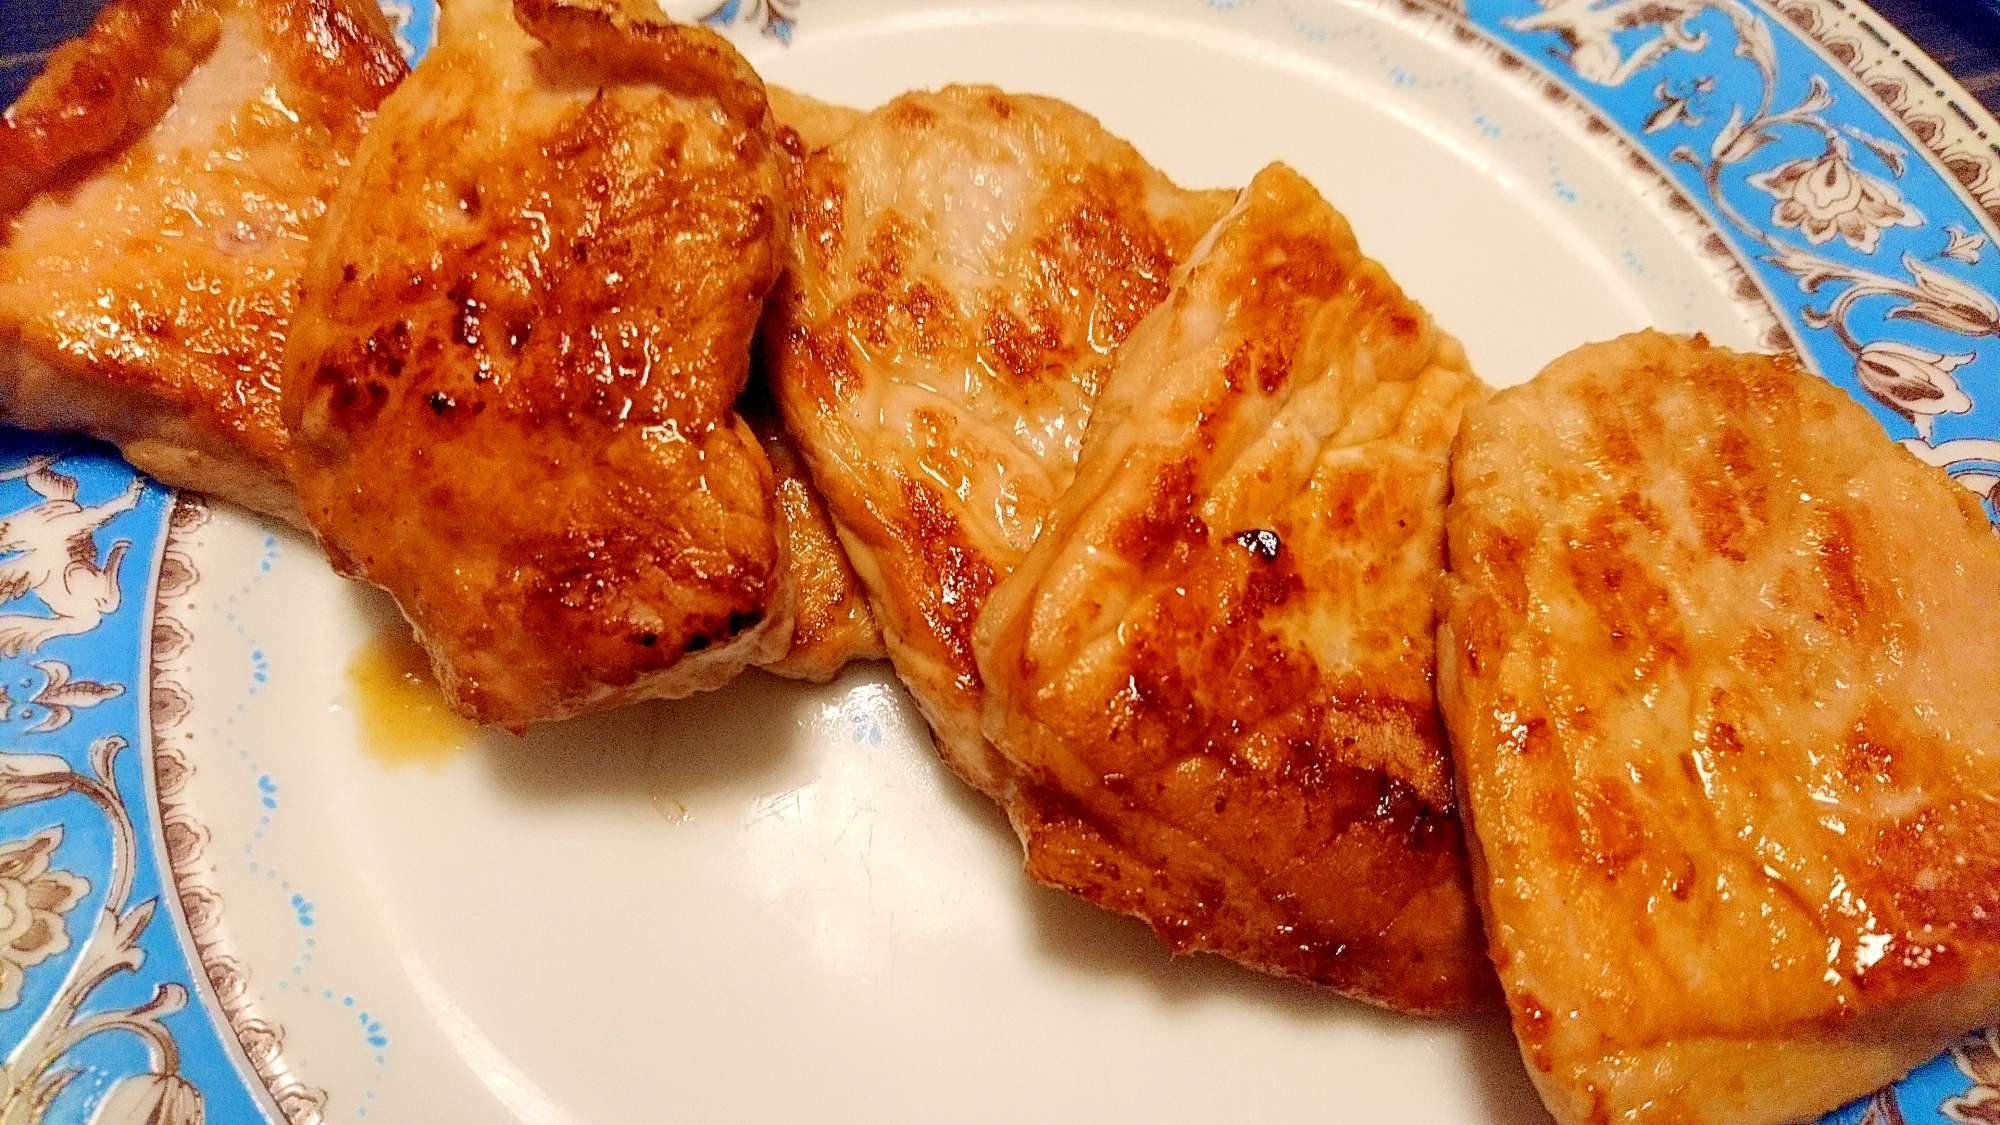 コストコの豚ロース生姜焼き用を使った生姜焼き